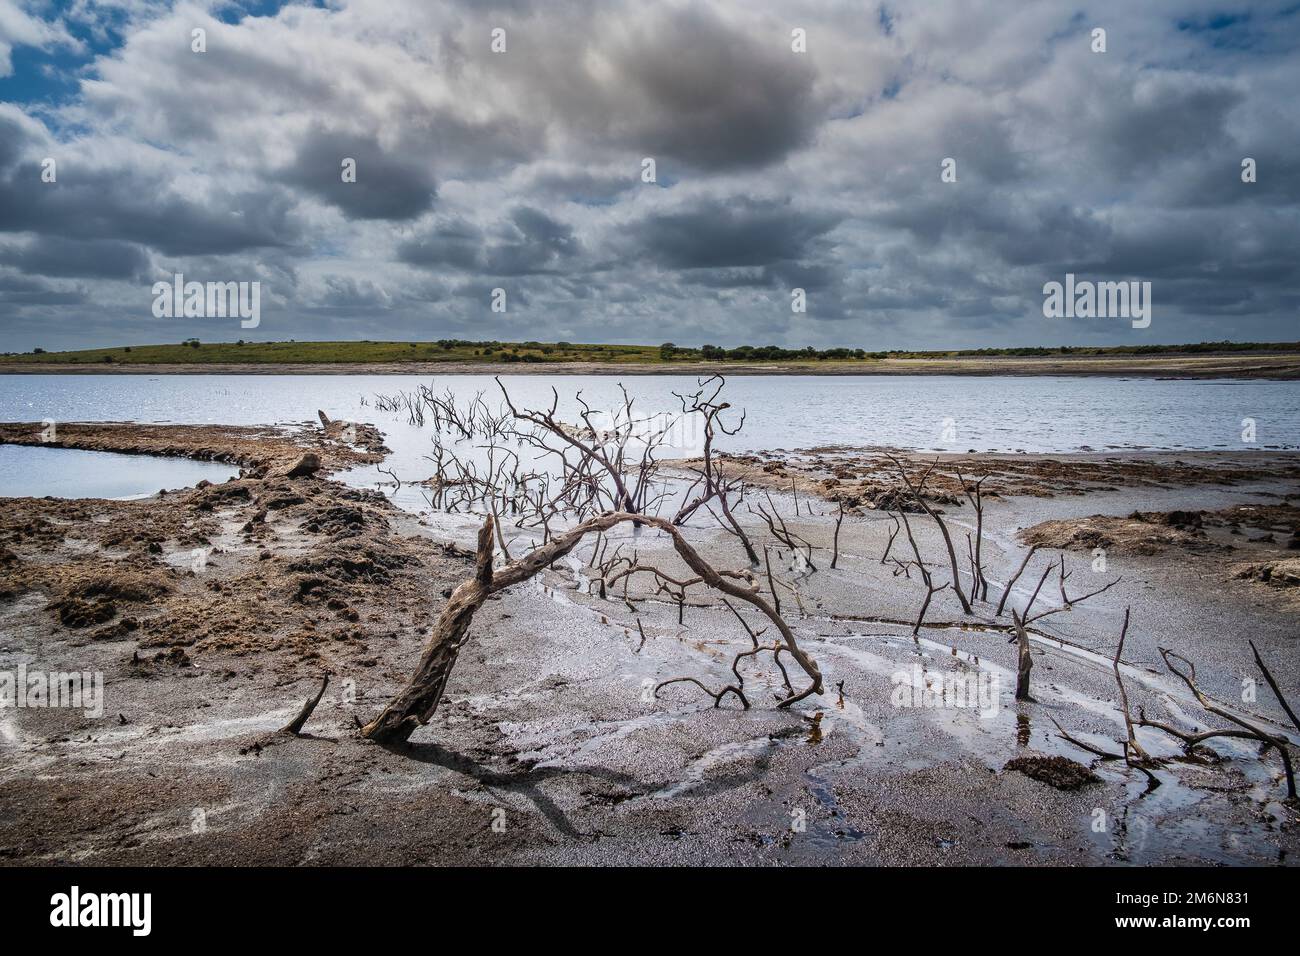 Vecchi alberi scheletrici morti esposti su un litorale in declino causato dalla caduta dei livelli dell'acqua causata da condizioni di siccità gravi al lago Colliford Reservoir Foto Stock